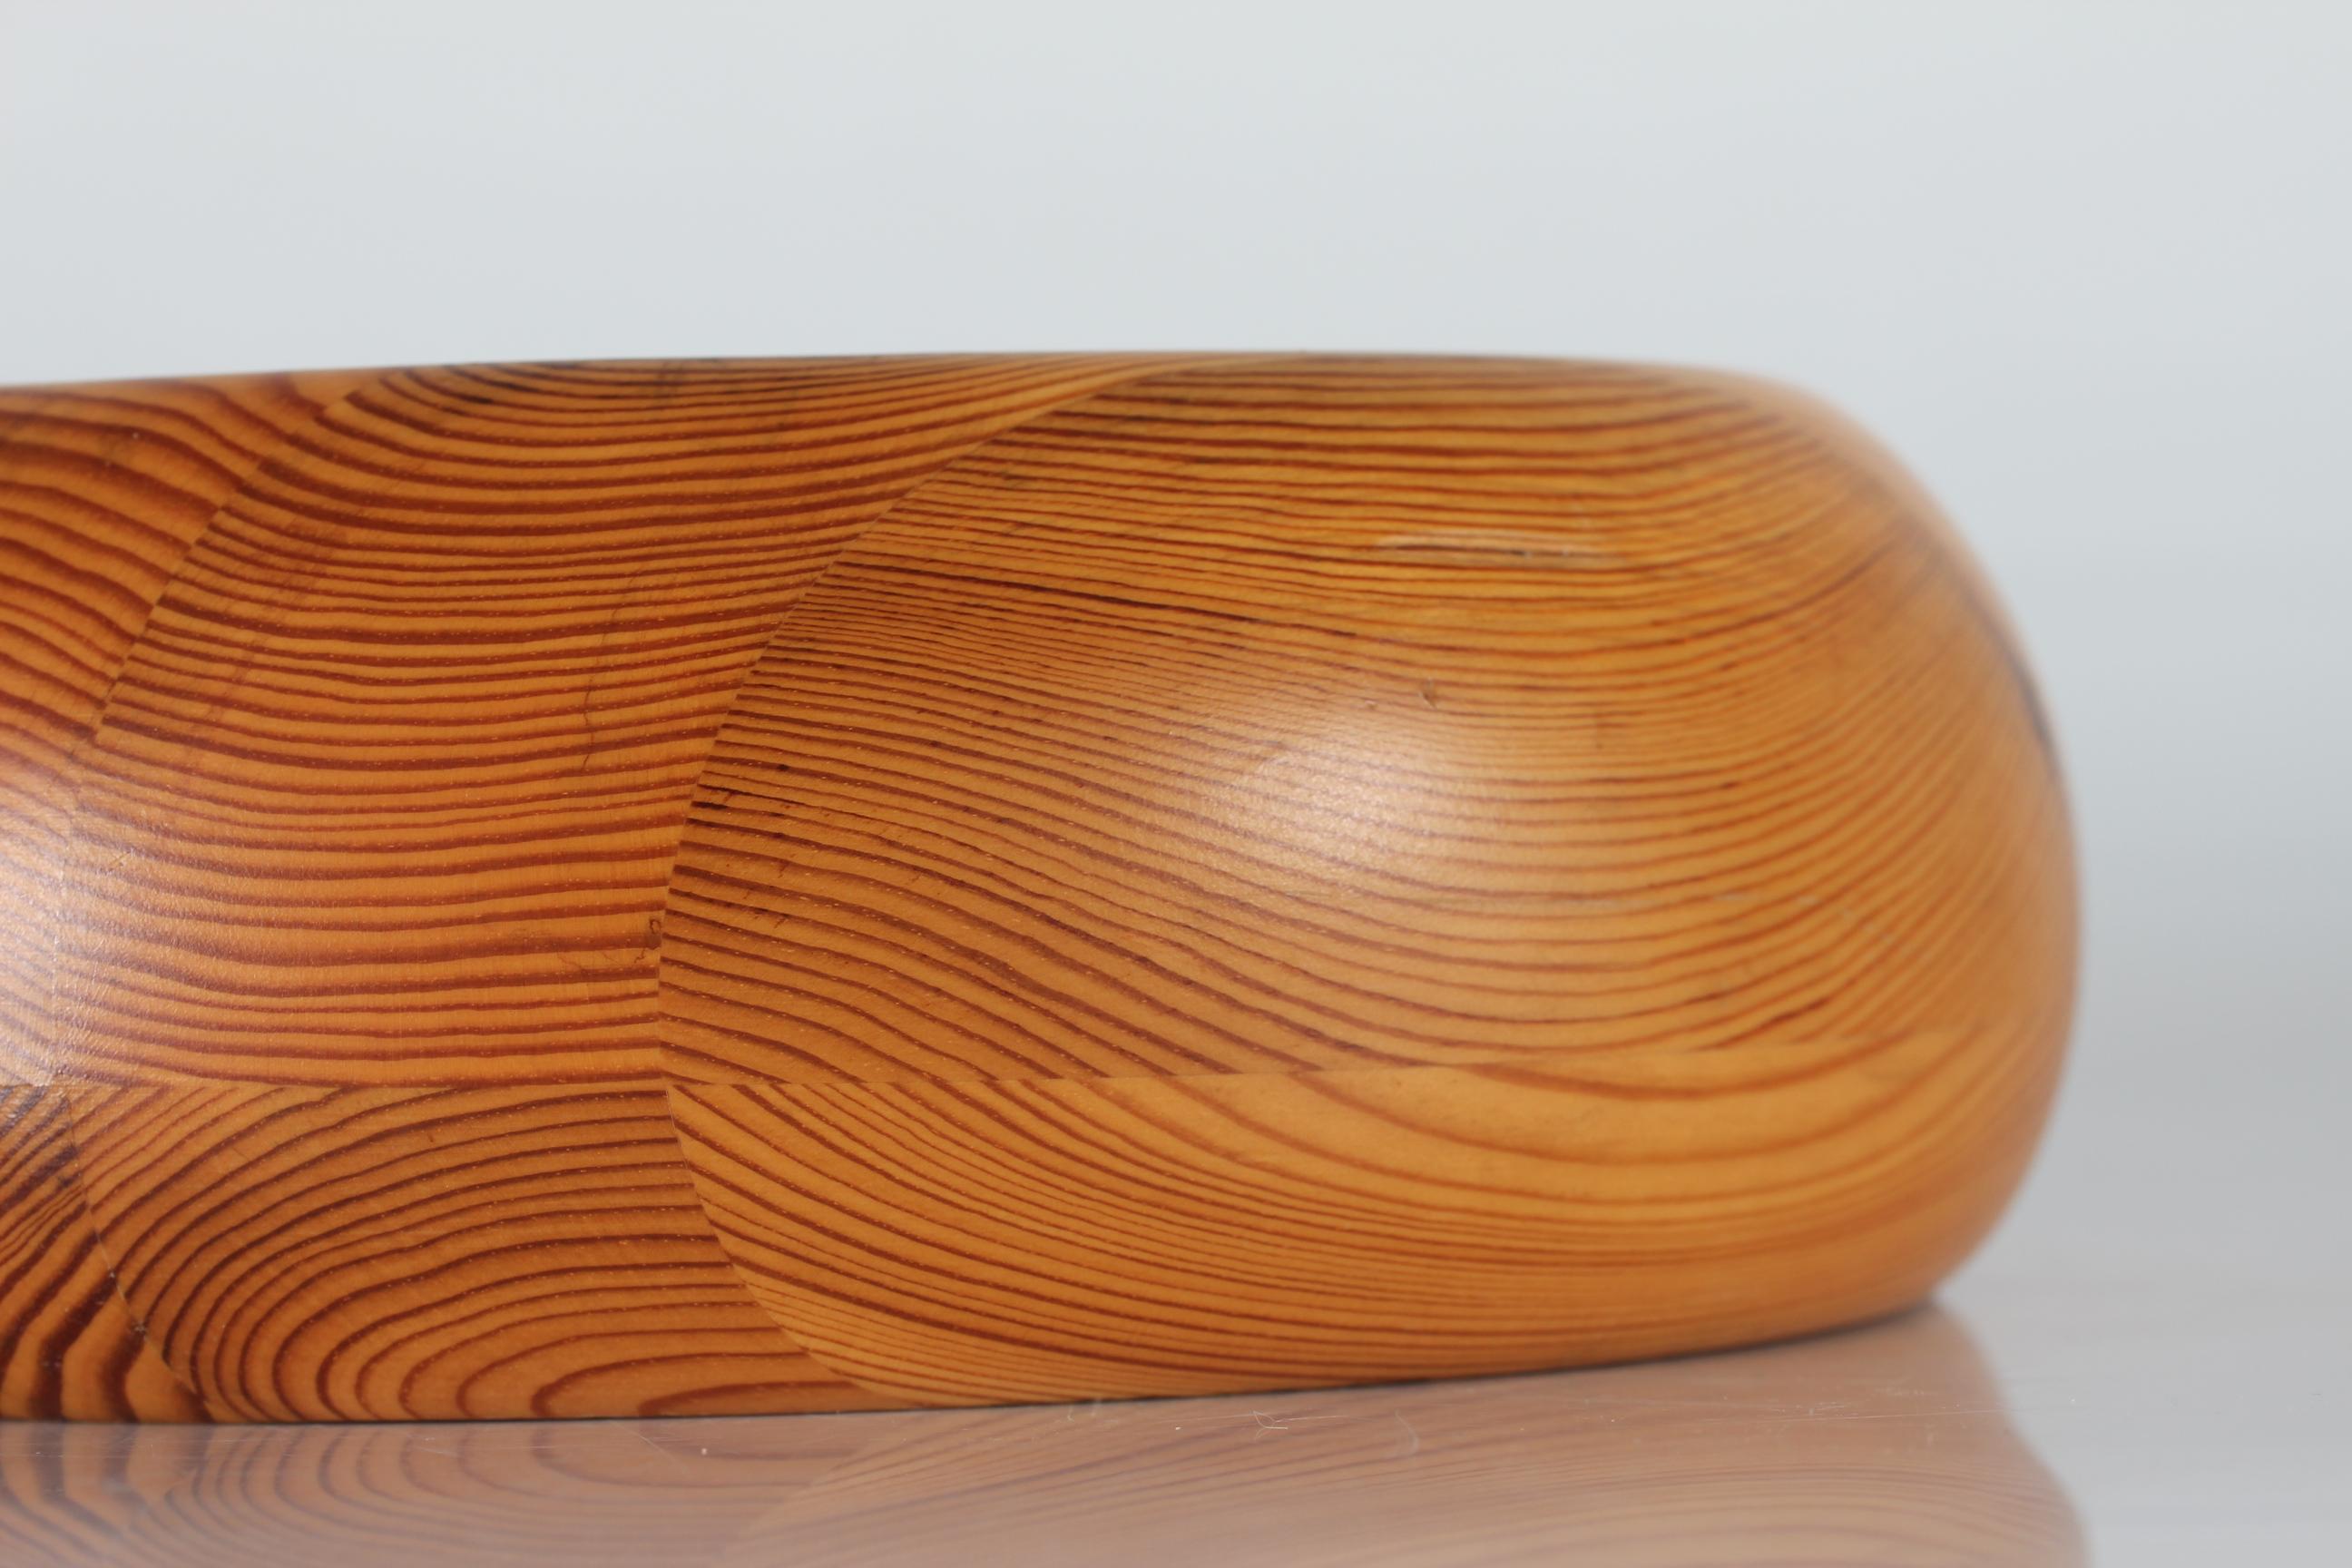 Grande coupe en pin massif conçue par Stig Johnsson pour Smålandsslöjd, Värnamo, Suède.

La surface du bol est traitée avec une laque mate transparente.

Bel état vintage avec patine - voir images de petites rayures.








